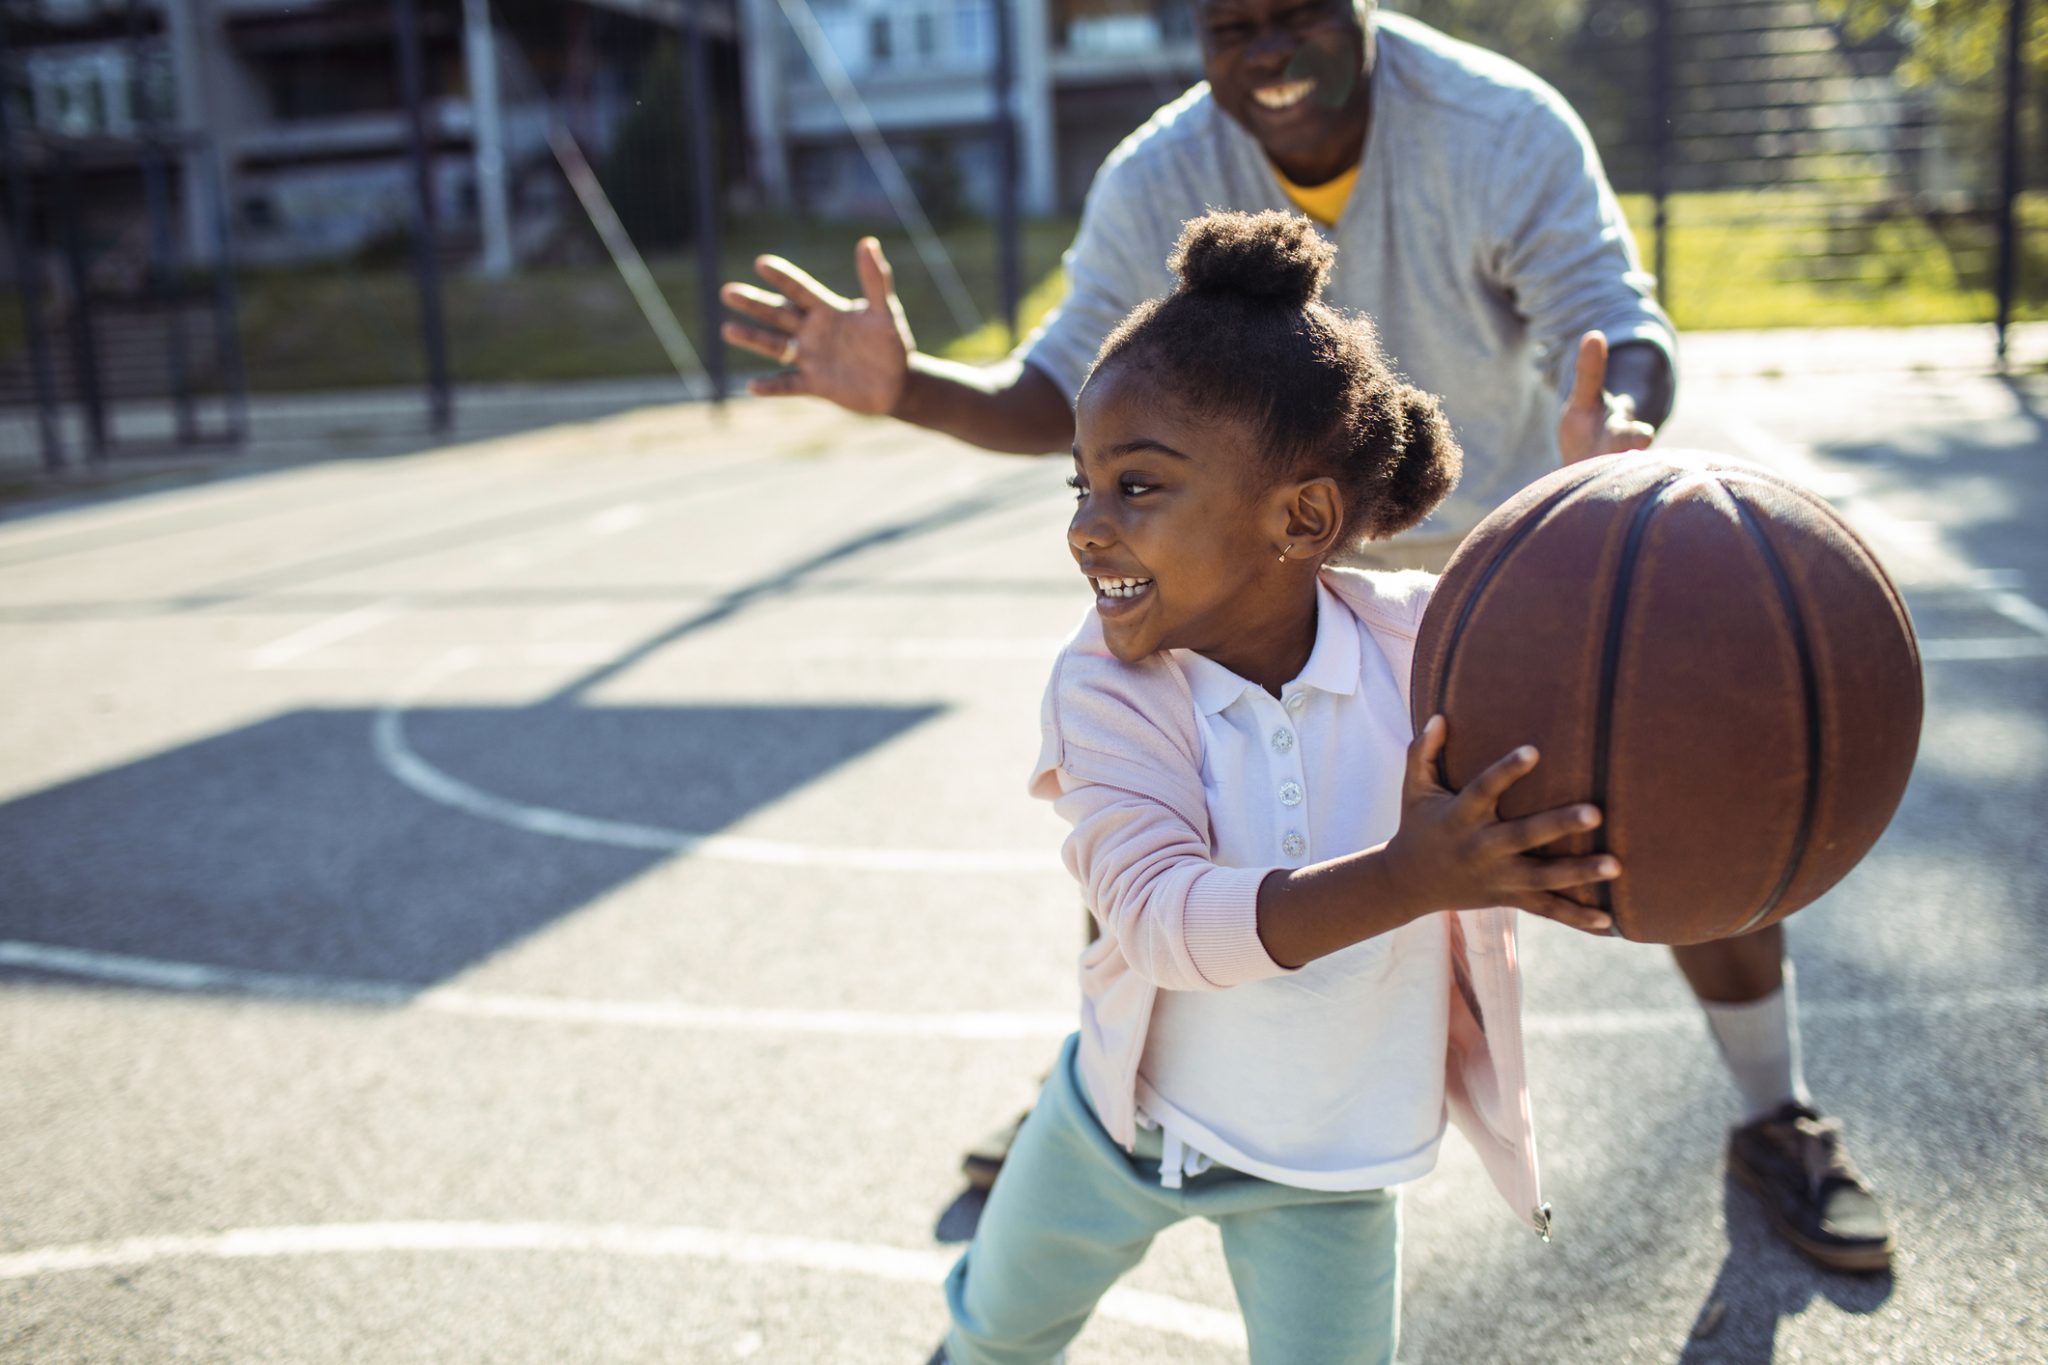 Hija jugando baloncesto con su papá